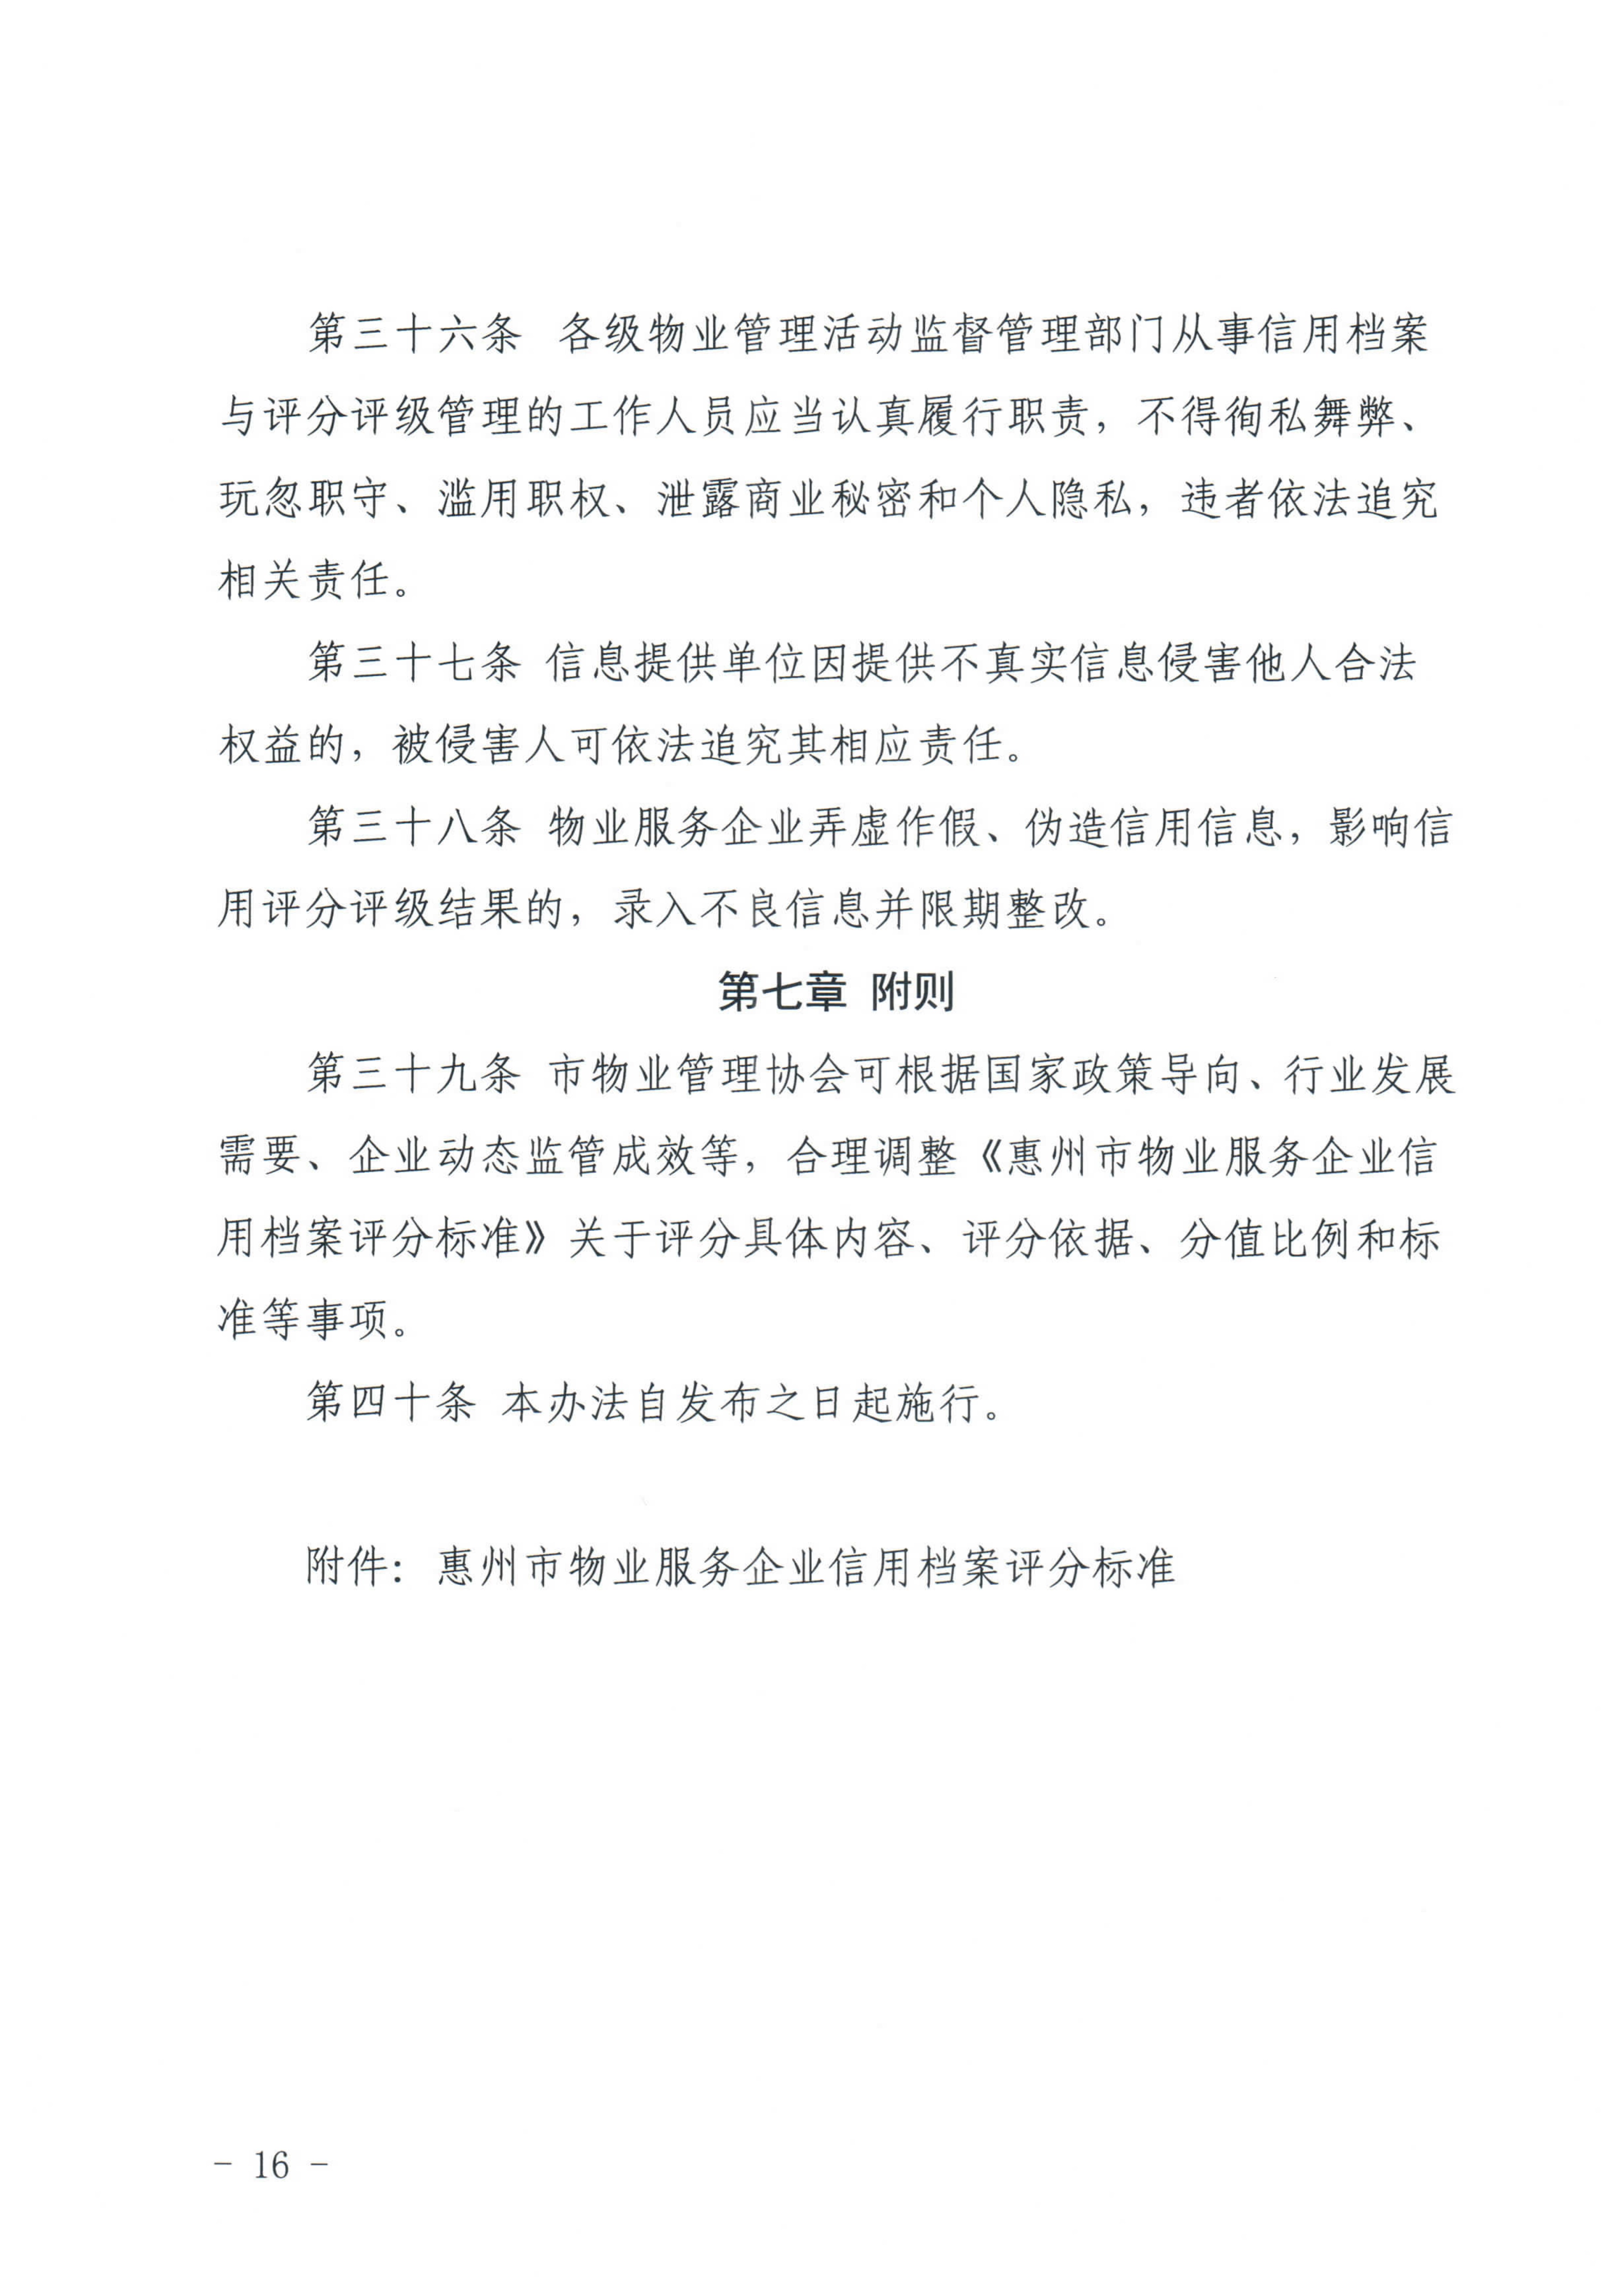 惠州市物业管理协会关于印发《惠州市物业管理活动信用档案管理办法》的通知_16.jpg